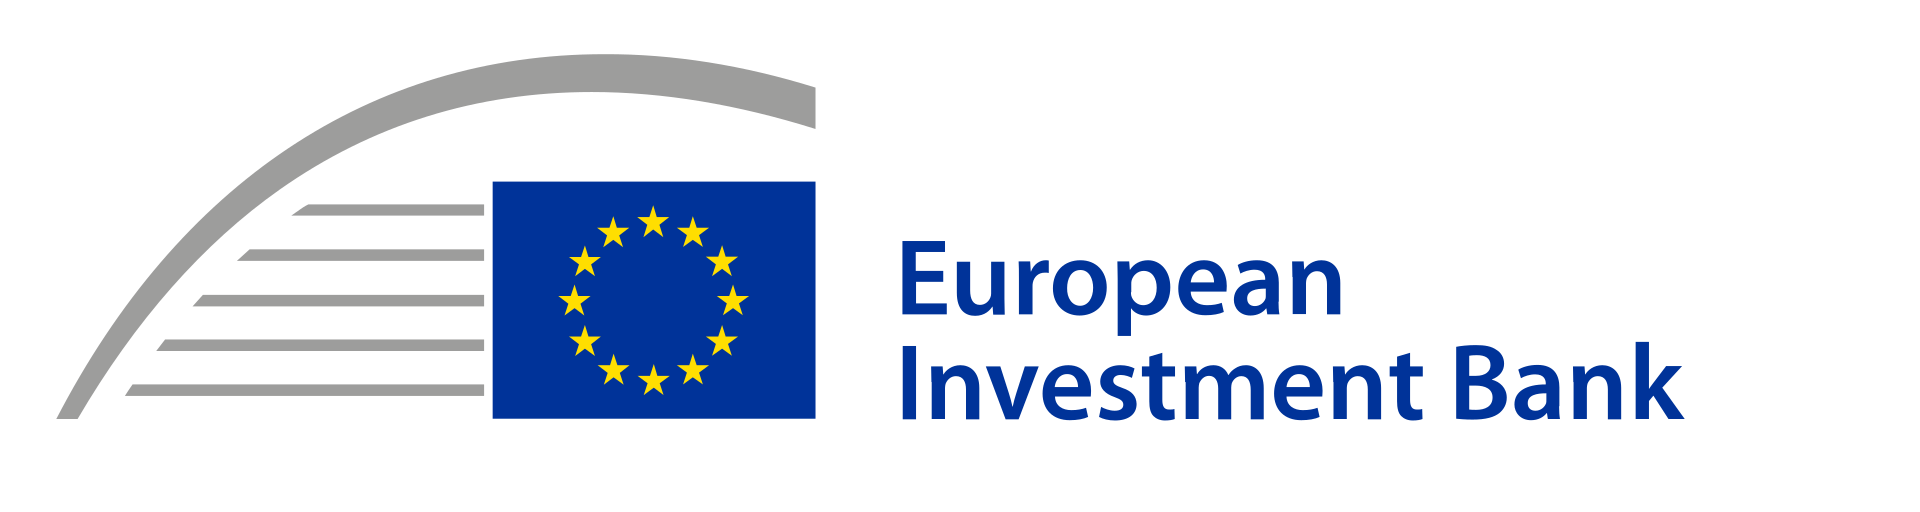 Евросоюз - EIB - European Investment Bank - Европейский инвестиционный банк